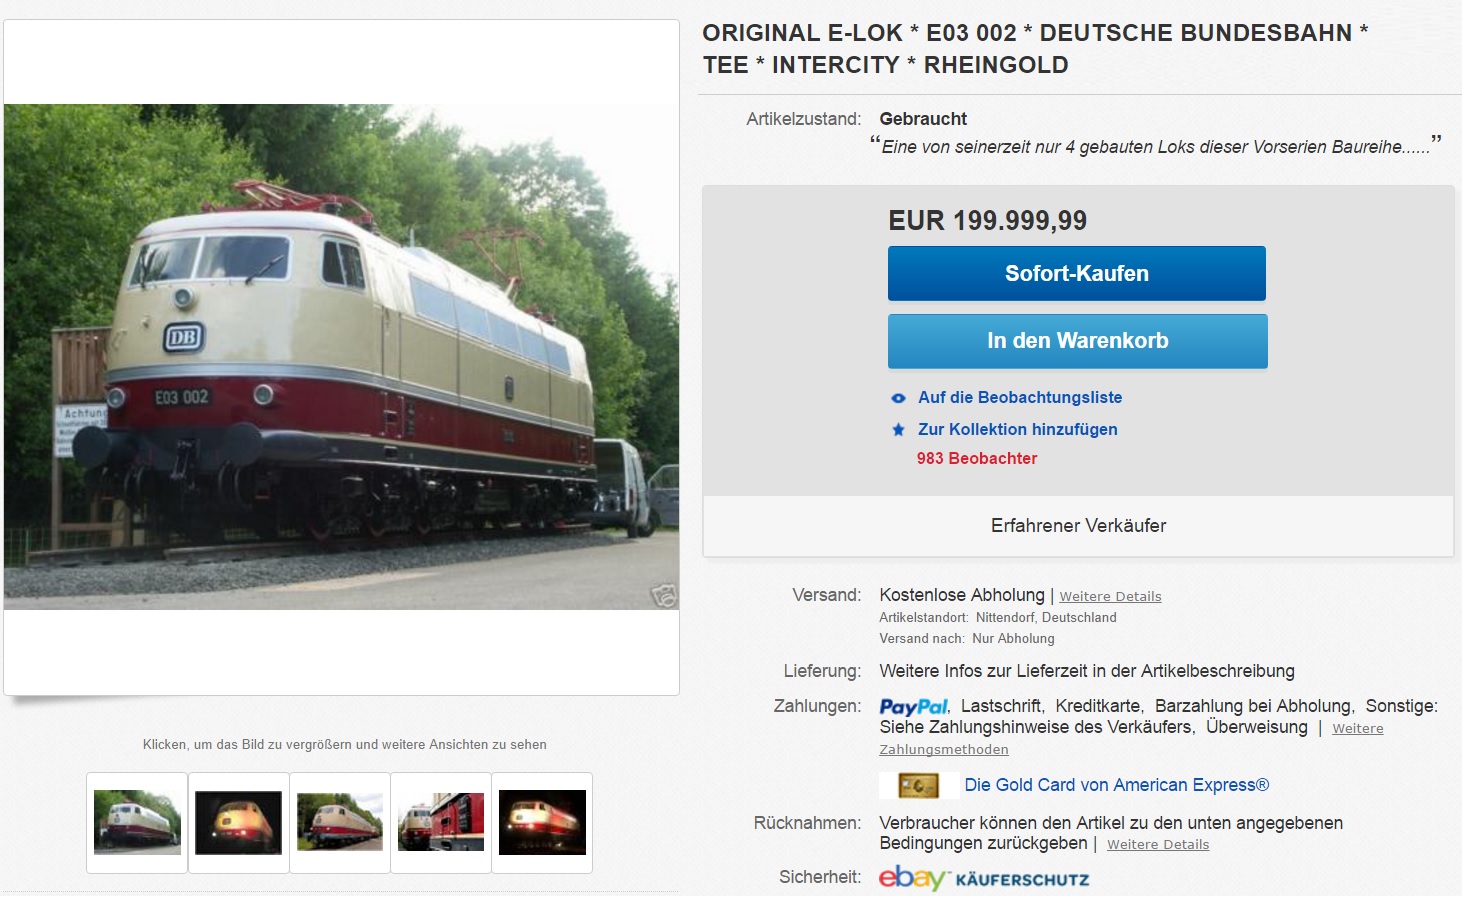 Das Verkaufsangebot der E 03 002 bei Ebay. (Screenshot: Ebay)